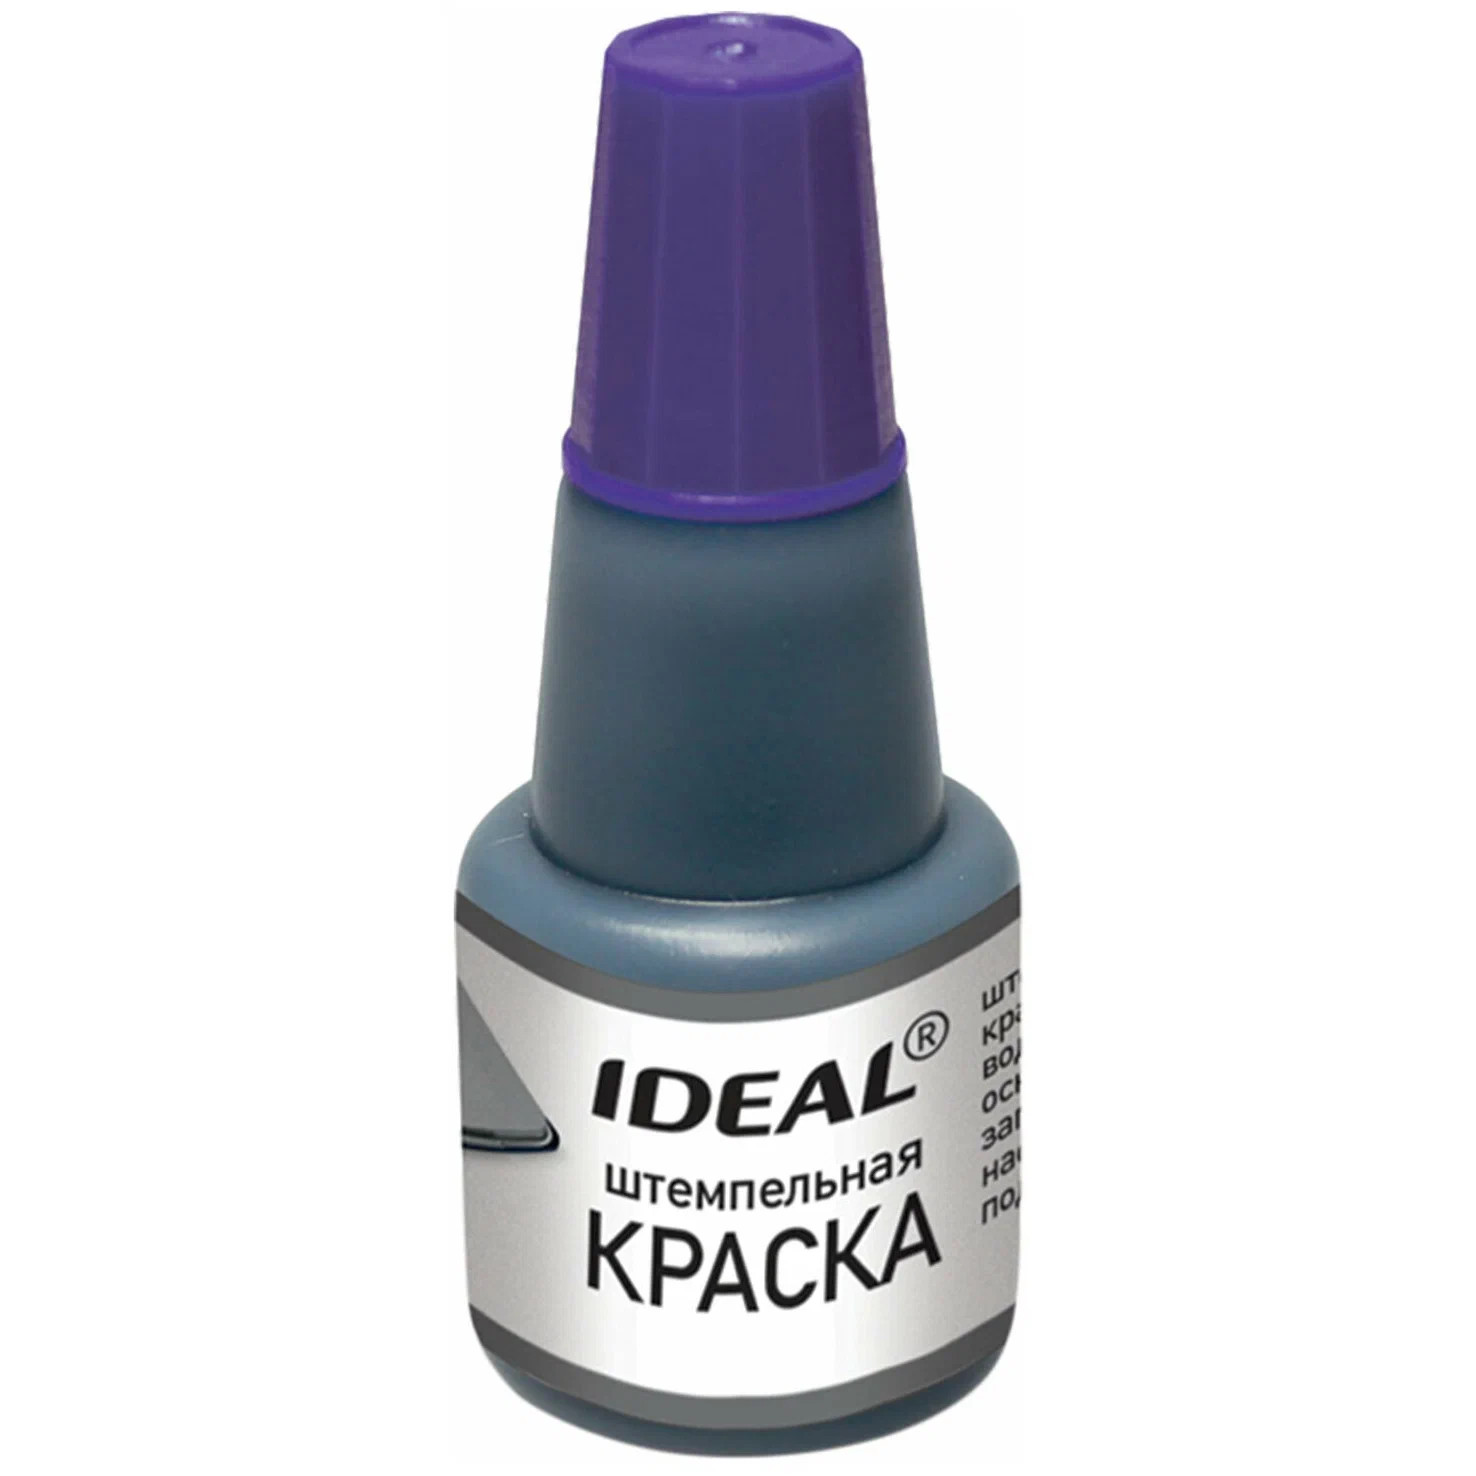 Краска штемпельная Тродат Ideal фиолетовая водная основа 24мл